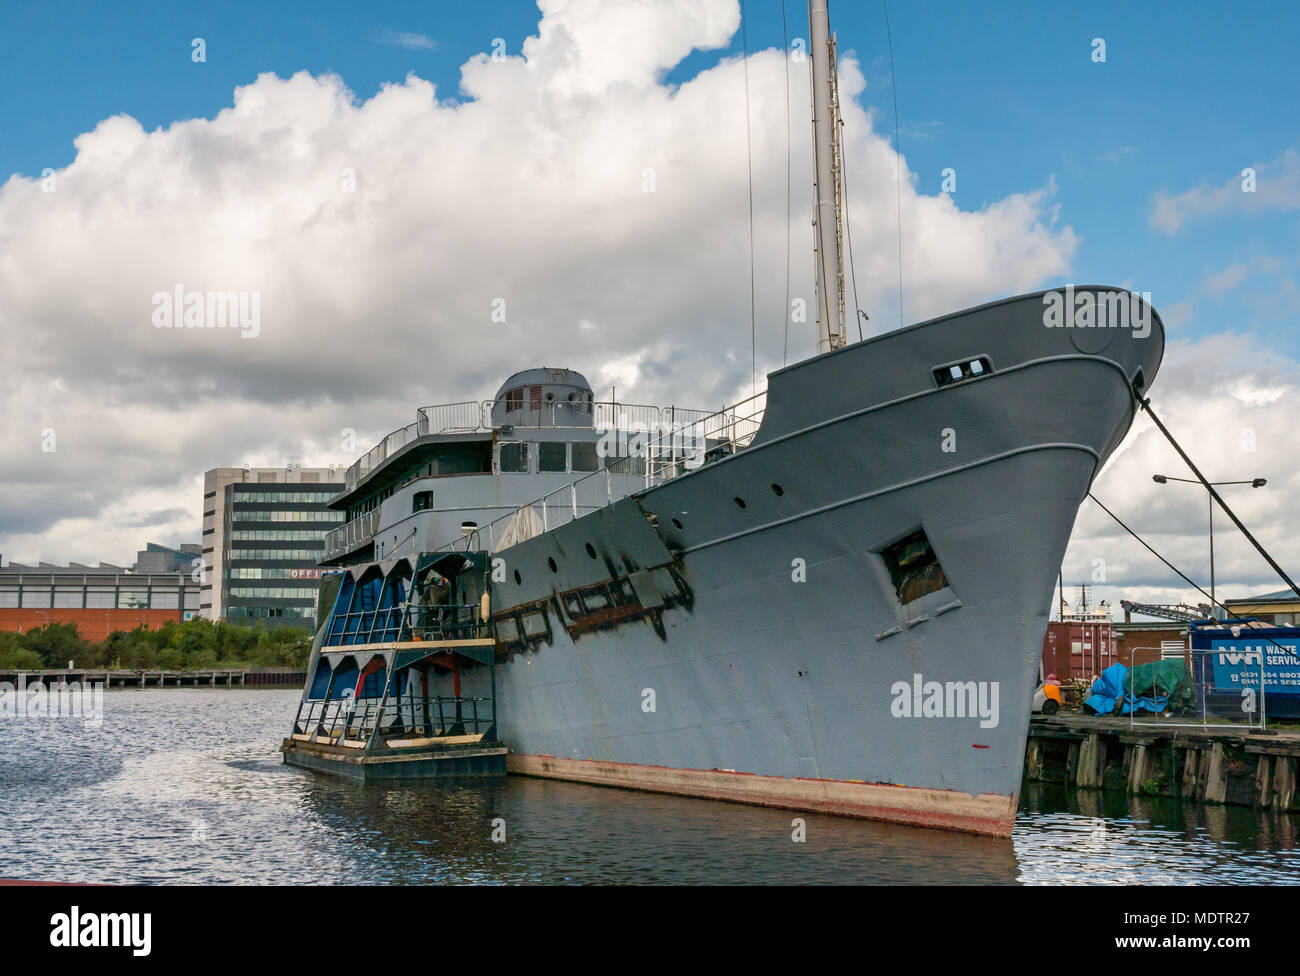 MV Fingal, navire phare tendre en cours de conversion en hôtel flottant de luxe à Leith Docks, Édimbourg, Écosse, Royaume-Uni Banque D'Images